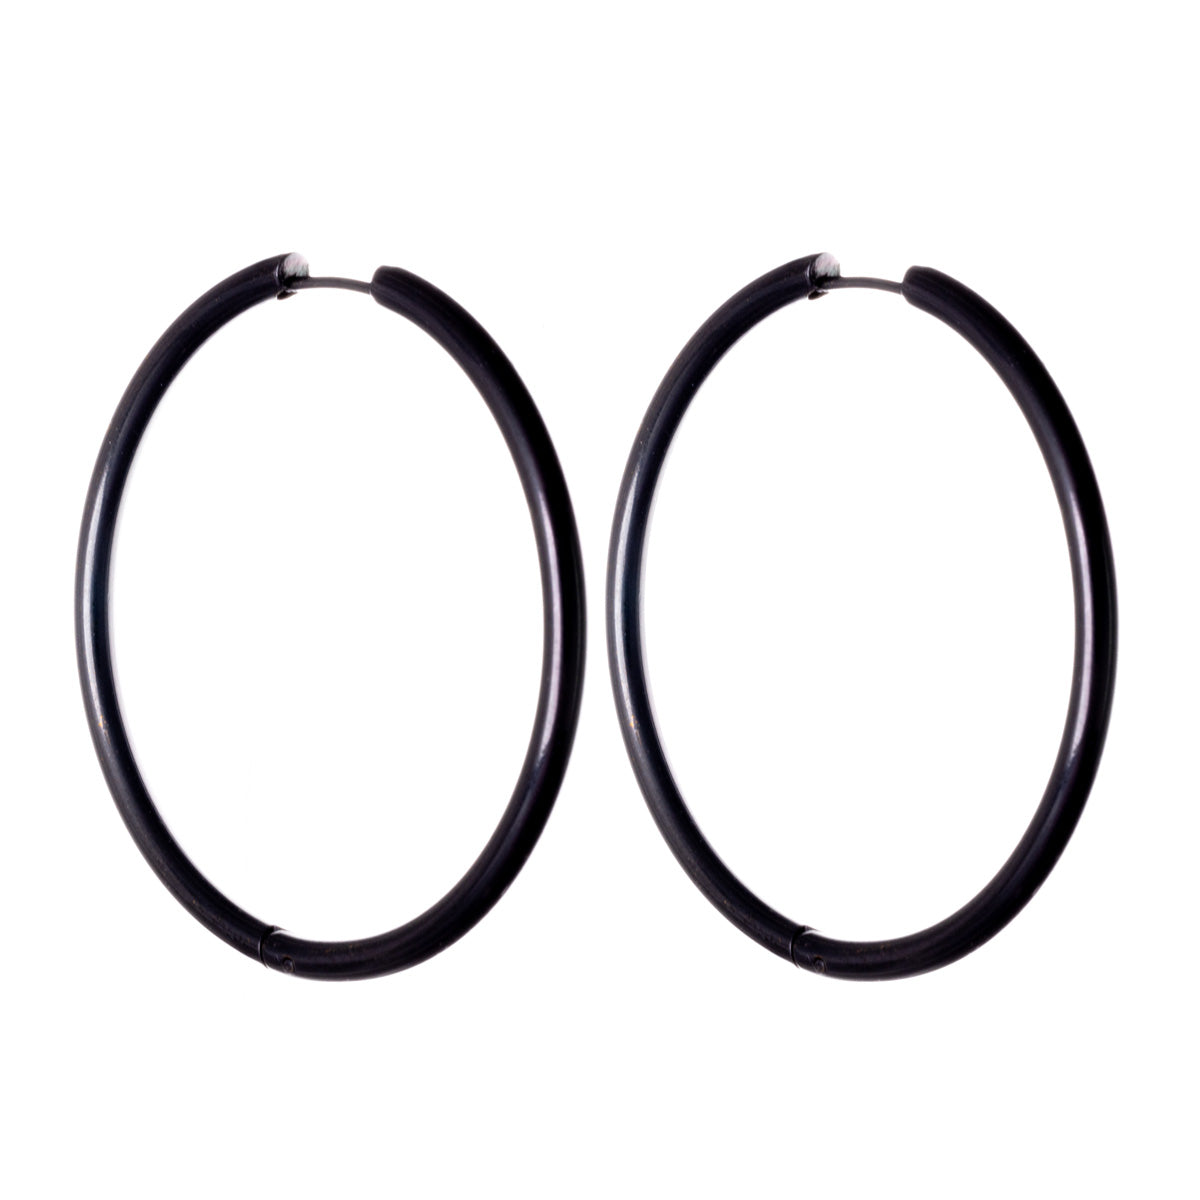 Steel earrings steel ring earrings 3mm 35mm